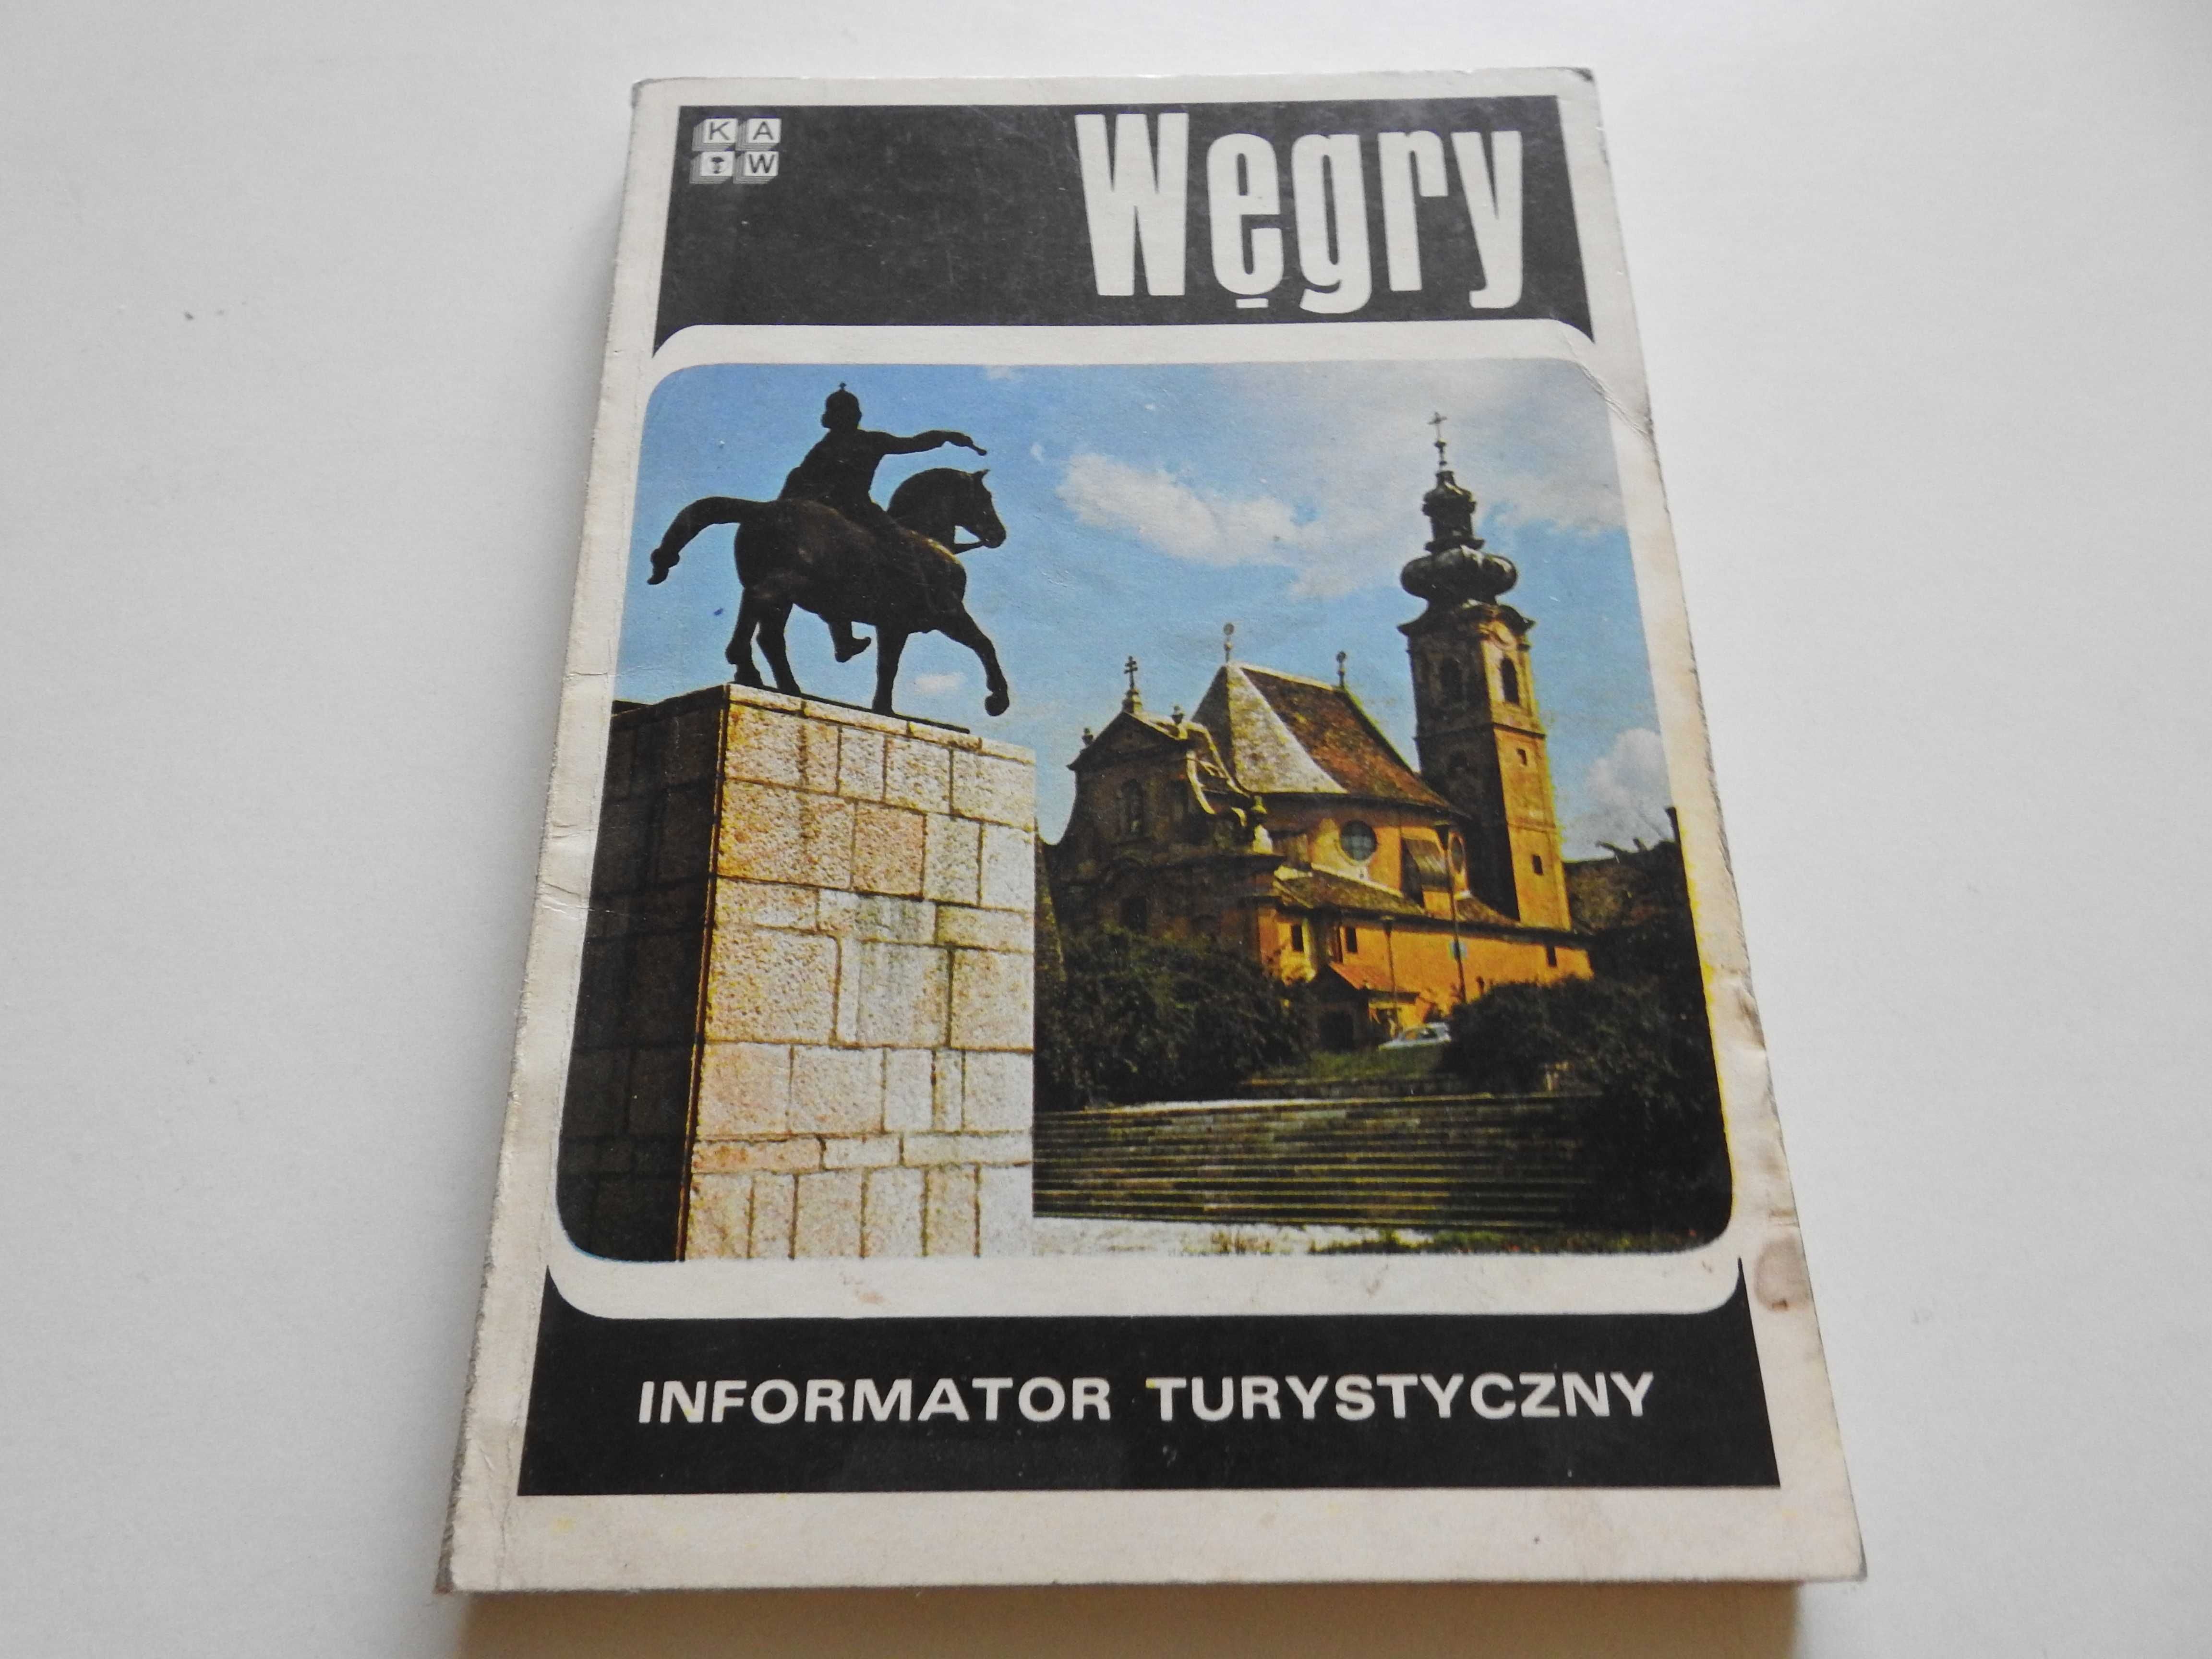 Informator turystyczny Węgry -  B. Wiechno